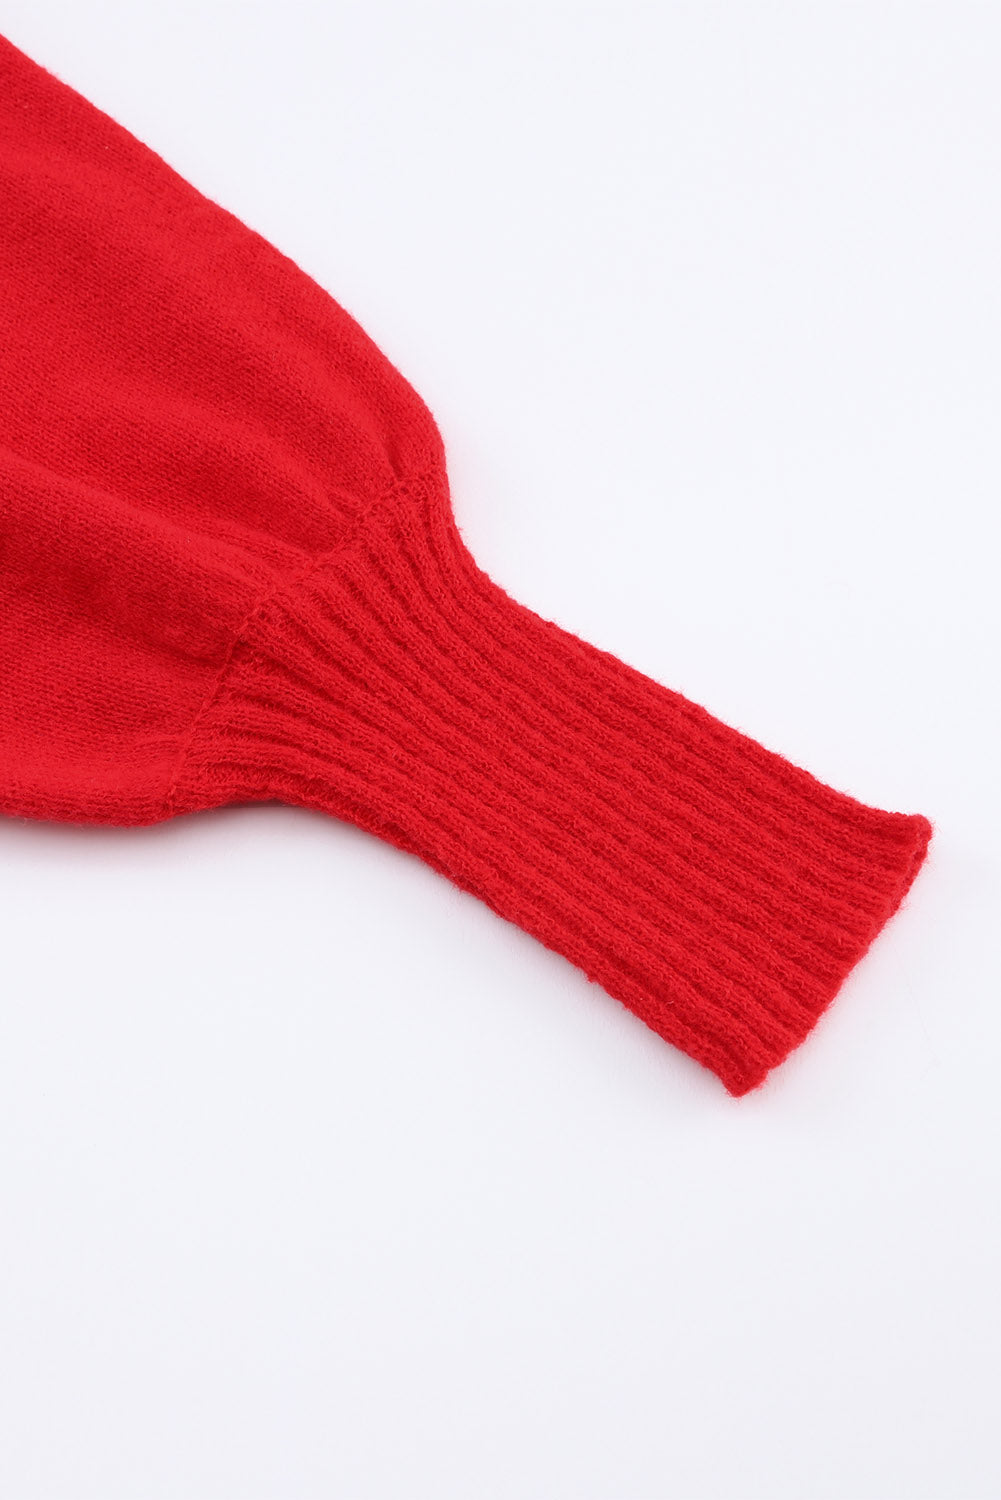 Dirkaški rdeč pulover z visokim ovratnikom z vezenim pismom LOVE